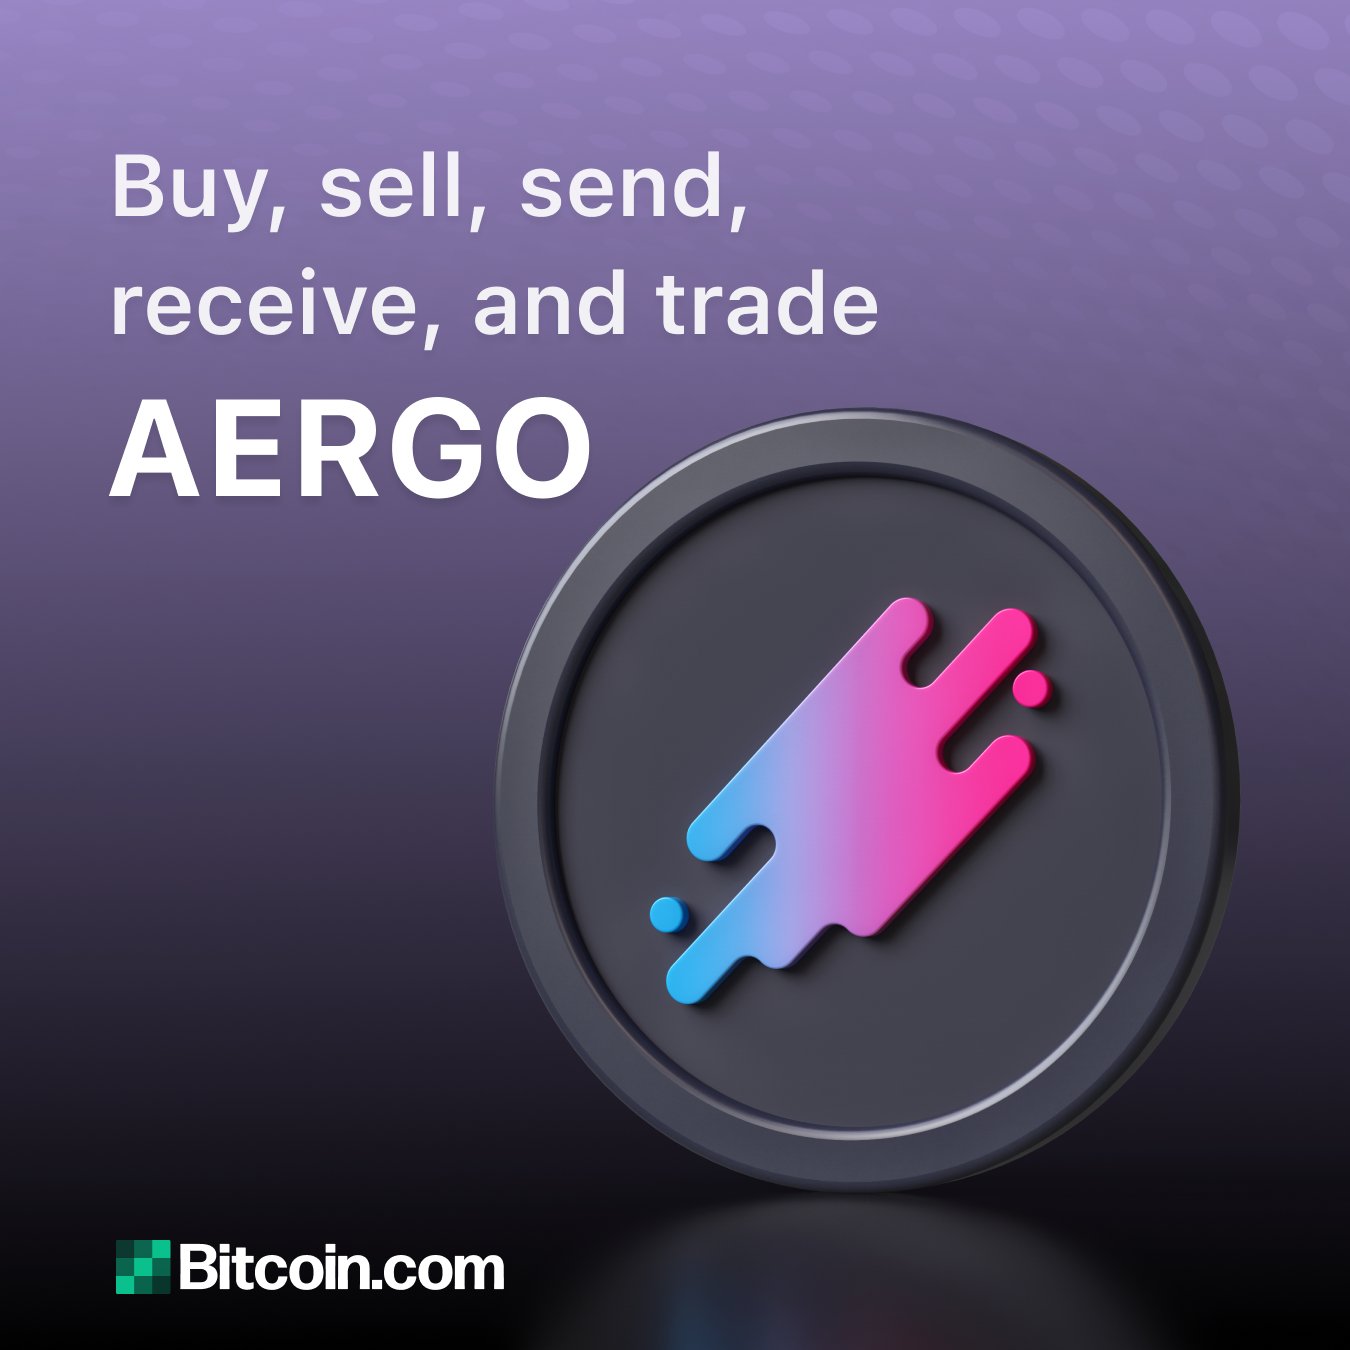 Теперь вы можете хранить, управлять, обменивать и использовать AERGO в кошельке Bitcoin.com: твит от Bitcoin.com